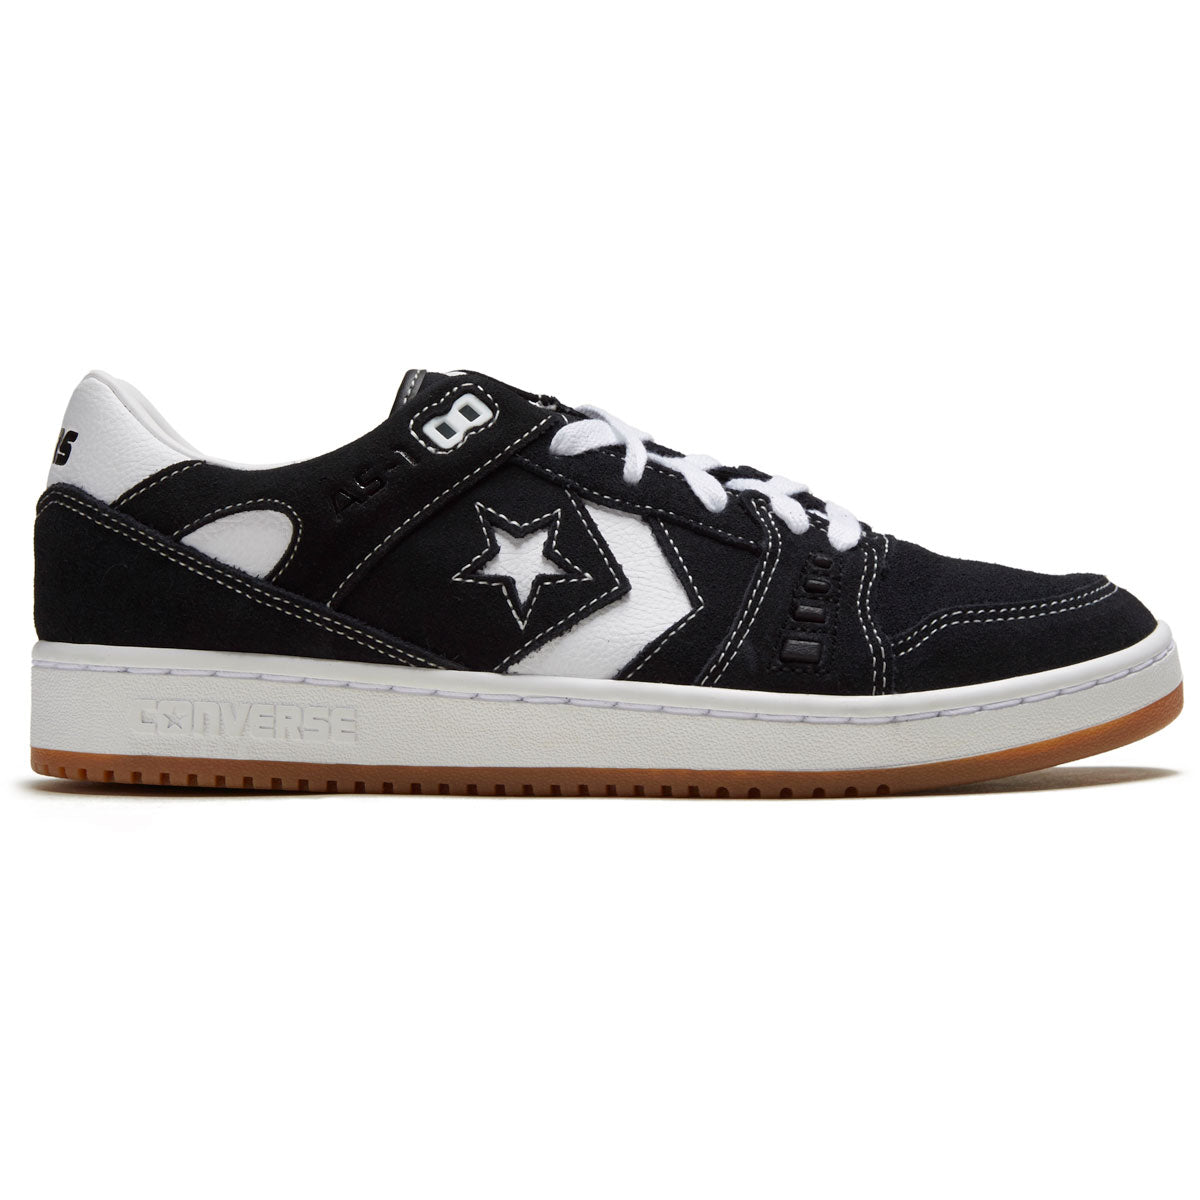 Converse As-1 Pro Shoes - Black/White/Gum – CCS